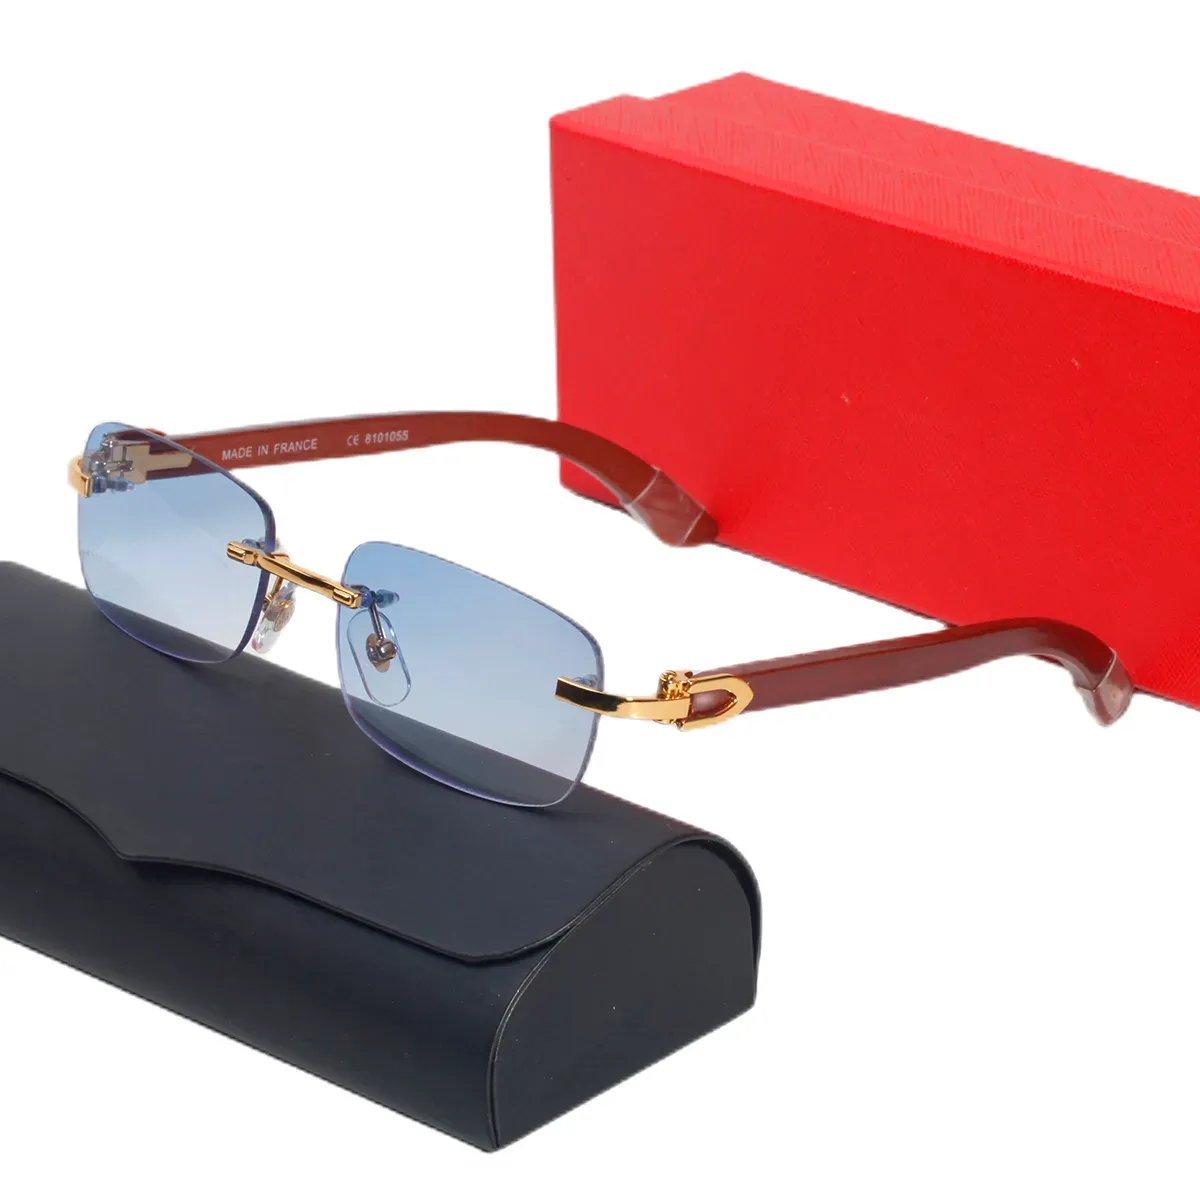 Neue büffelhorn sonnenbrille mode carti brille sport sonnenbrille für männer frauen randlose rechteckige brille mit boxen fall brillen herren sonnenbrille